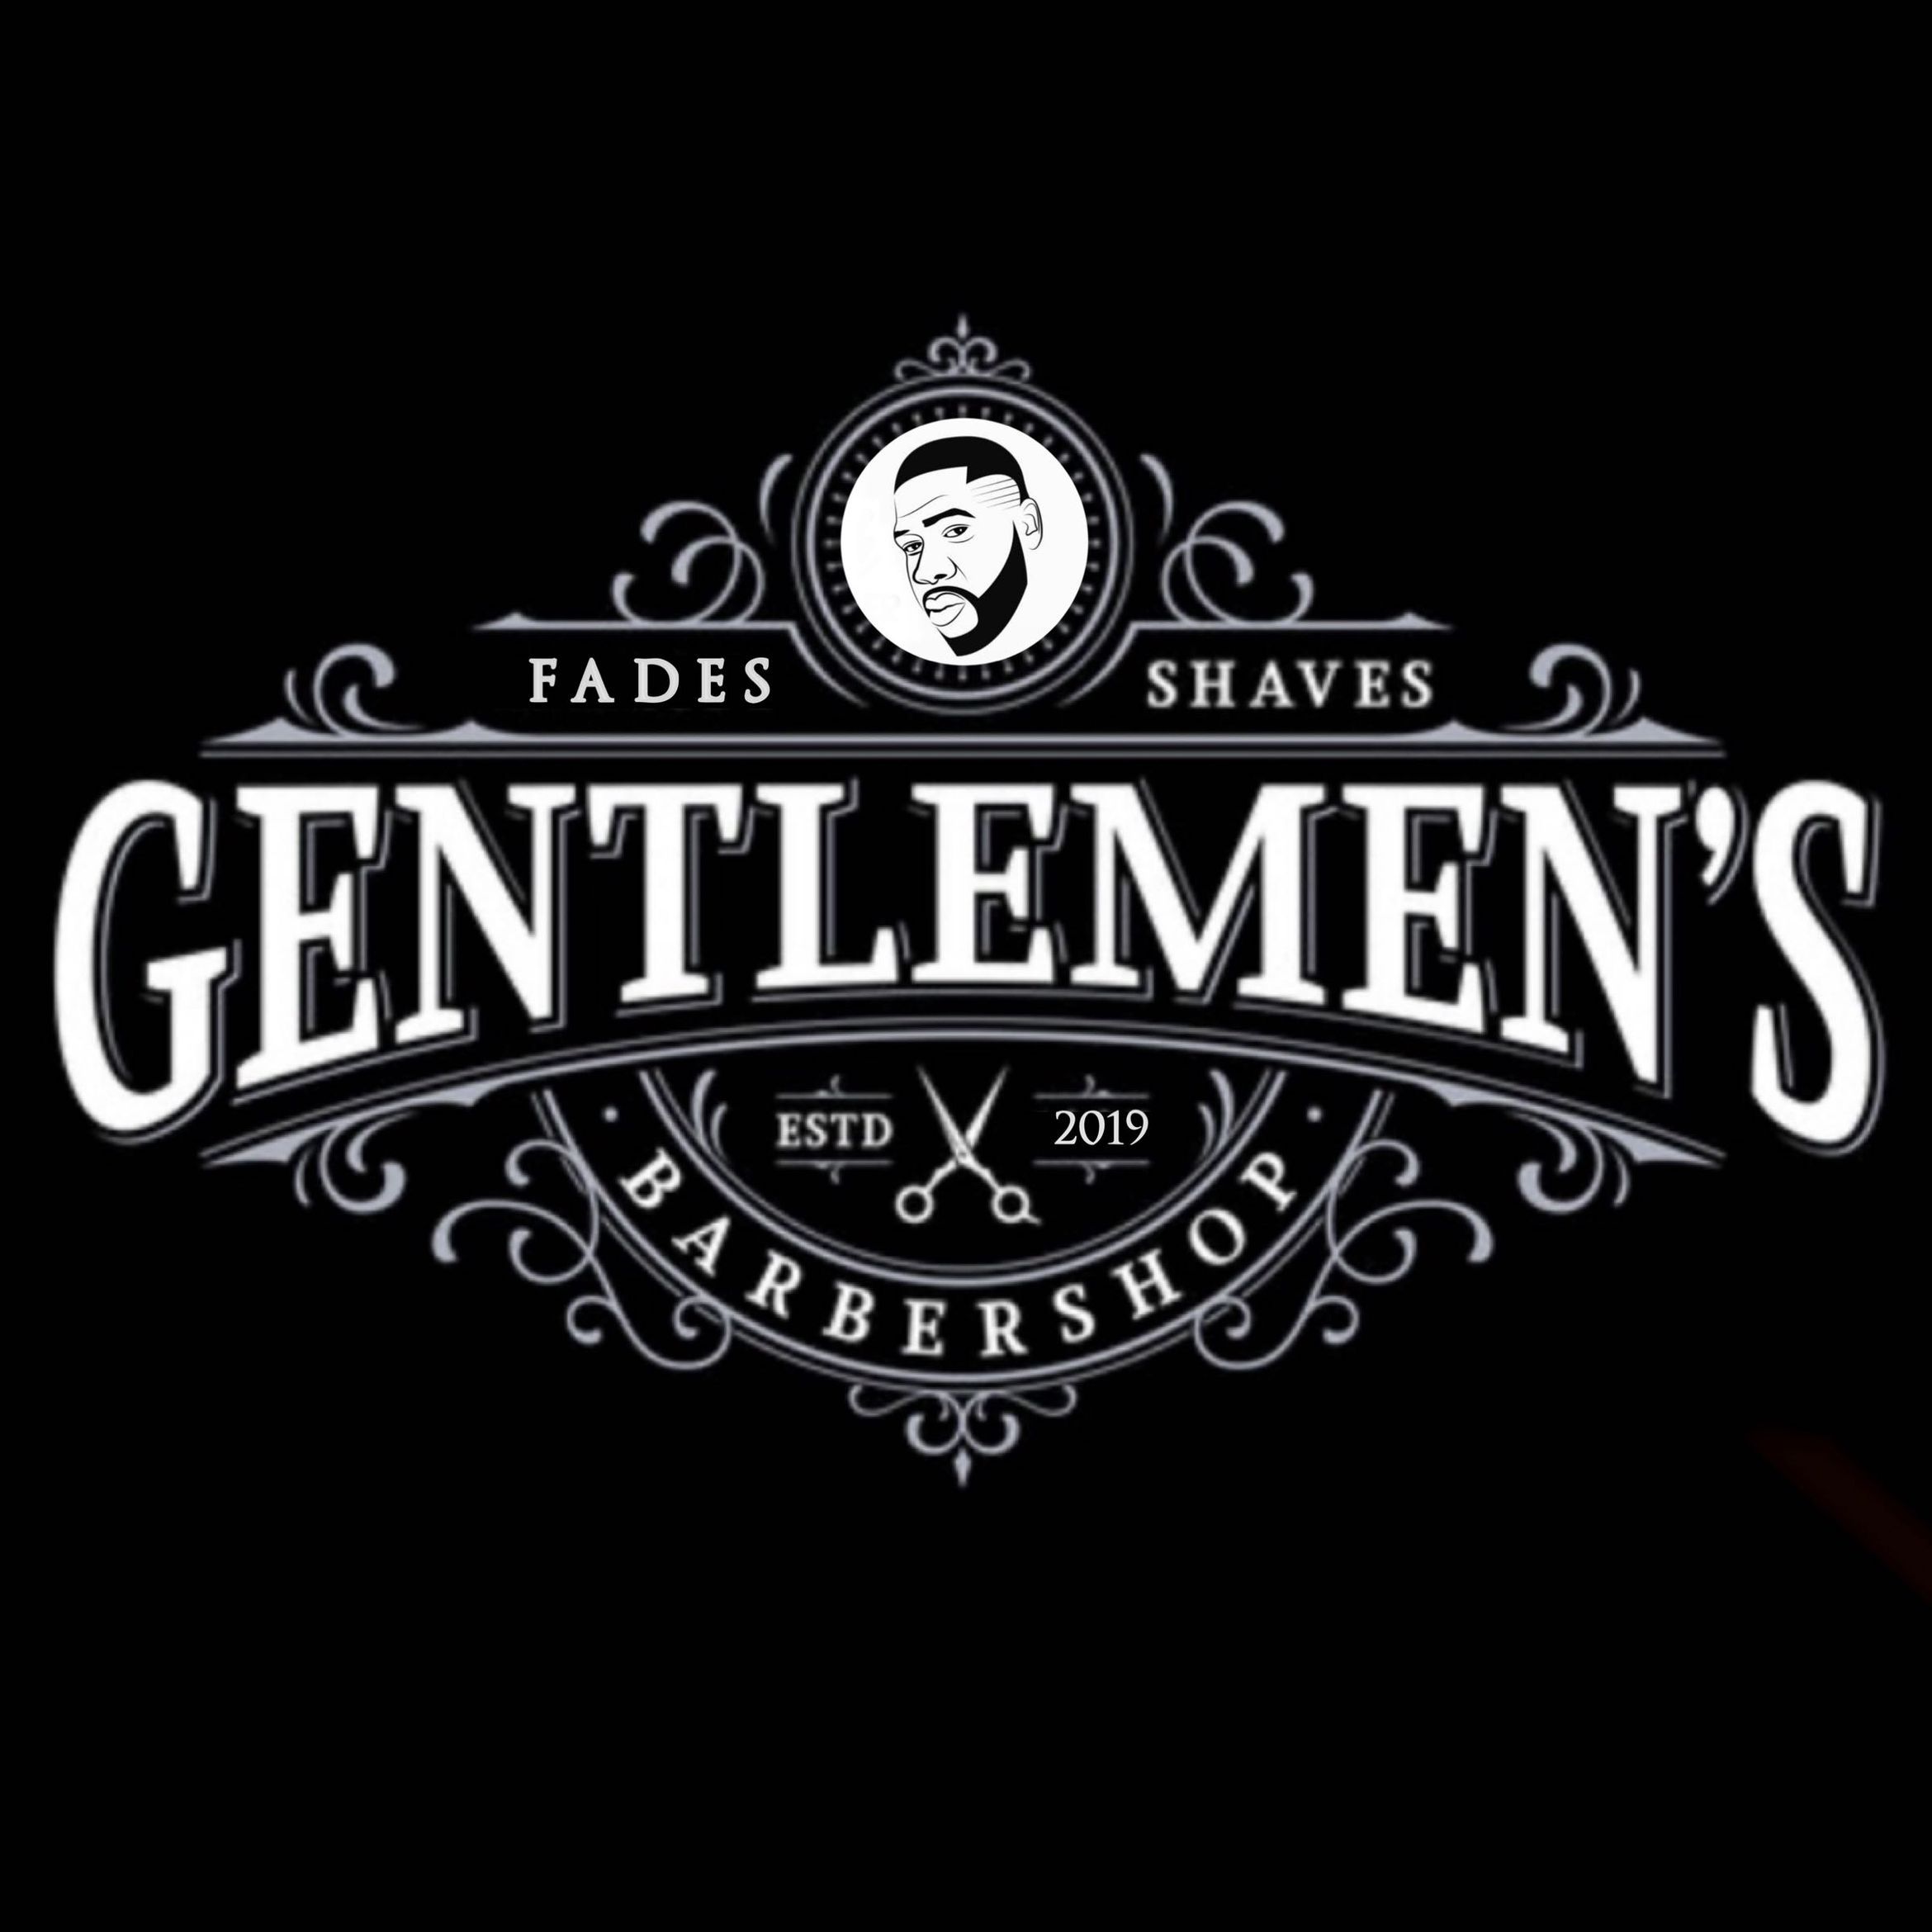 Gentlemen’s Barbershop, 215 Broadway Dr, Ste 65, Hattiesburg, 39402